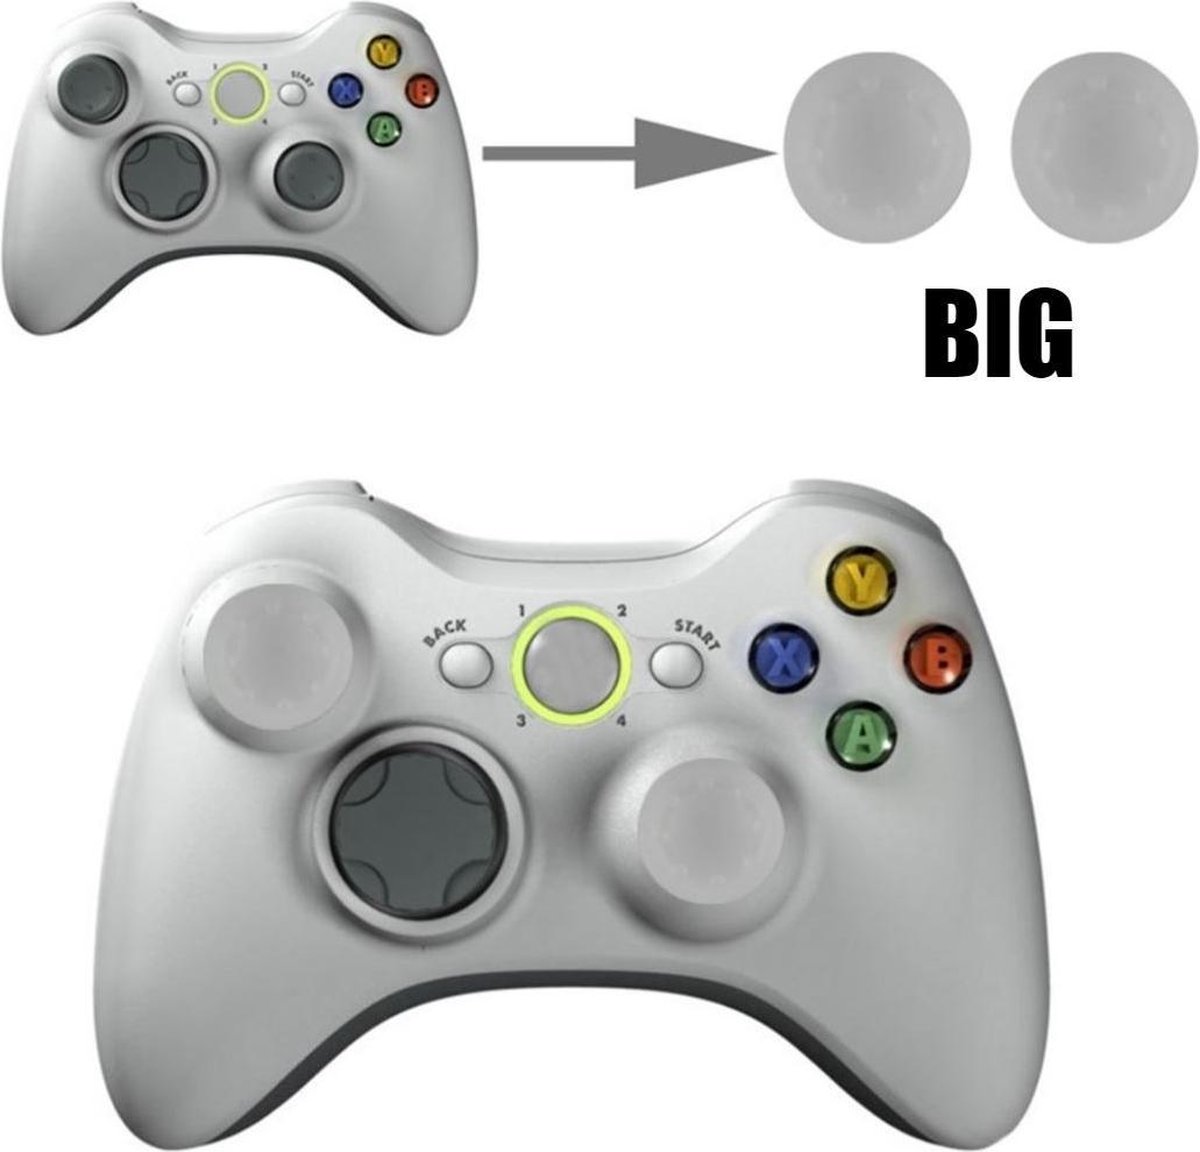 Thumb grips - Controller Thumbgrips - Joystick Cap - Thumbsticks - Thumb Grip Cap gschikt voor PS5, PS4, Switch Pro, Steamdeck en Xbox X/S - 2 stuks Groot 8 dots extra grip Doorzichtig